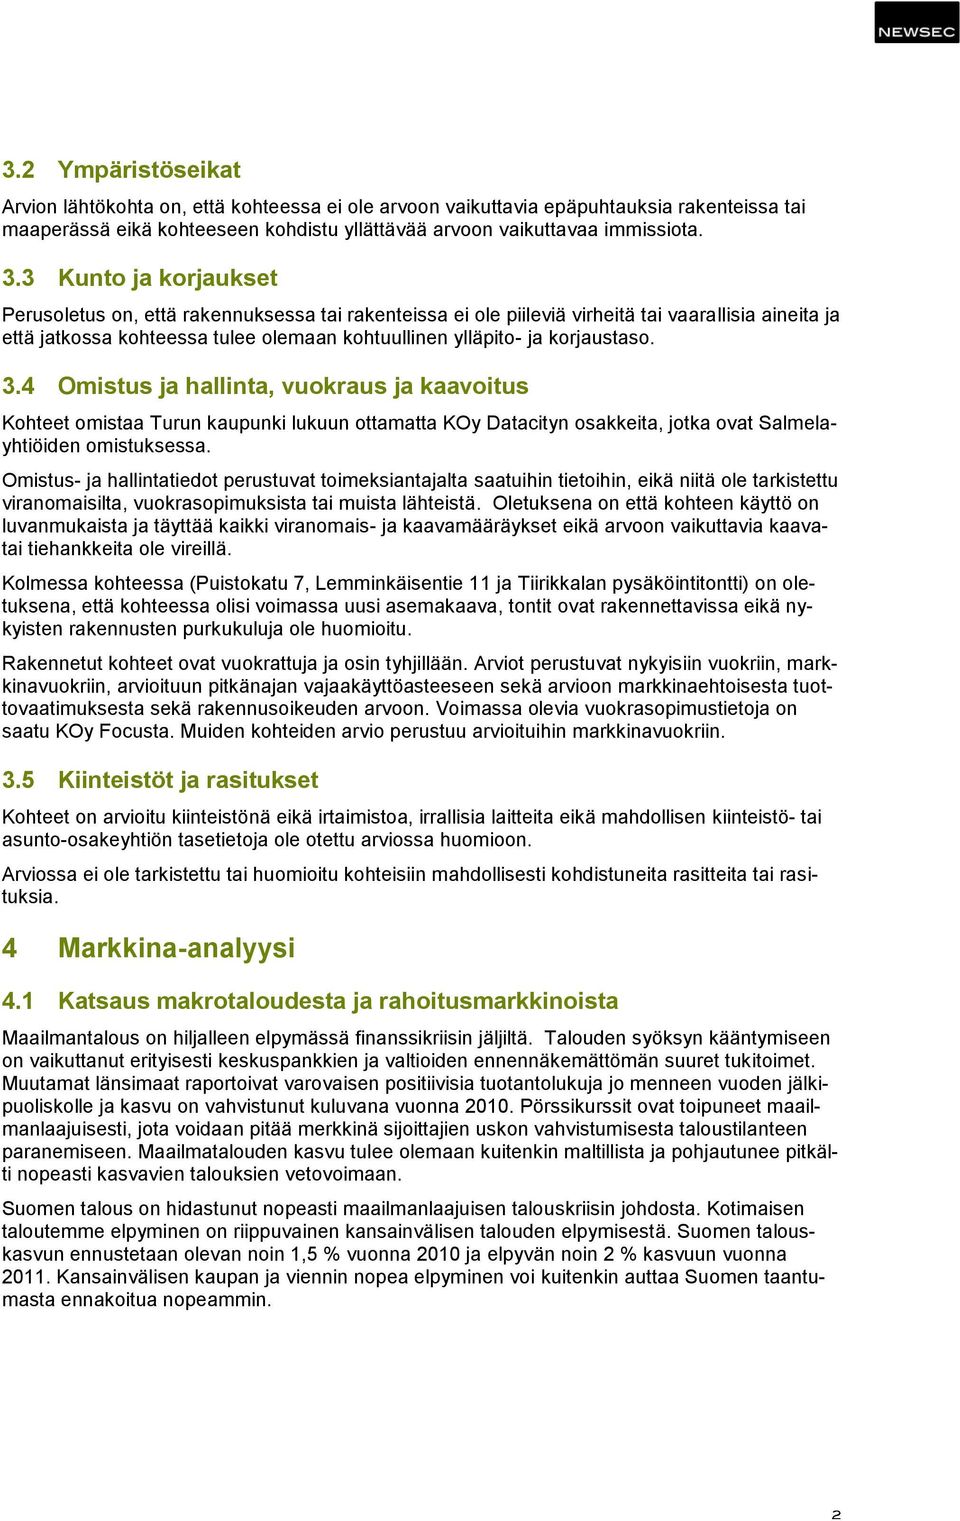 korjaustaso. 3.4 Omistus ja hallinta, vuokraus ja kaavoitus Kohteet omistaa Turun kaupunki lukuun ottamatta KOy Datacityn osakkeita, jotka ovat Salmelayhtiöiden omistuksessa.